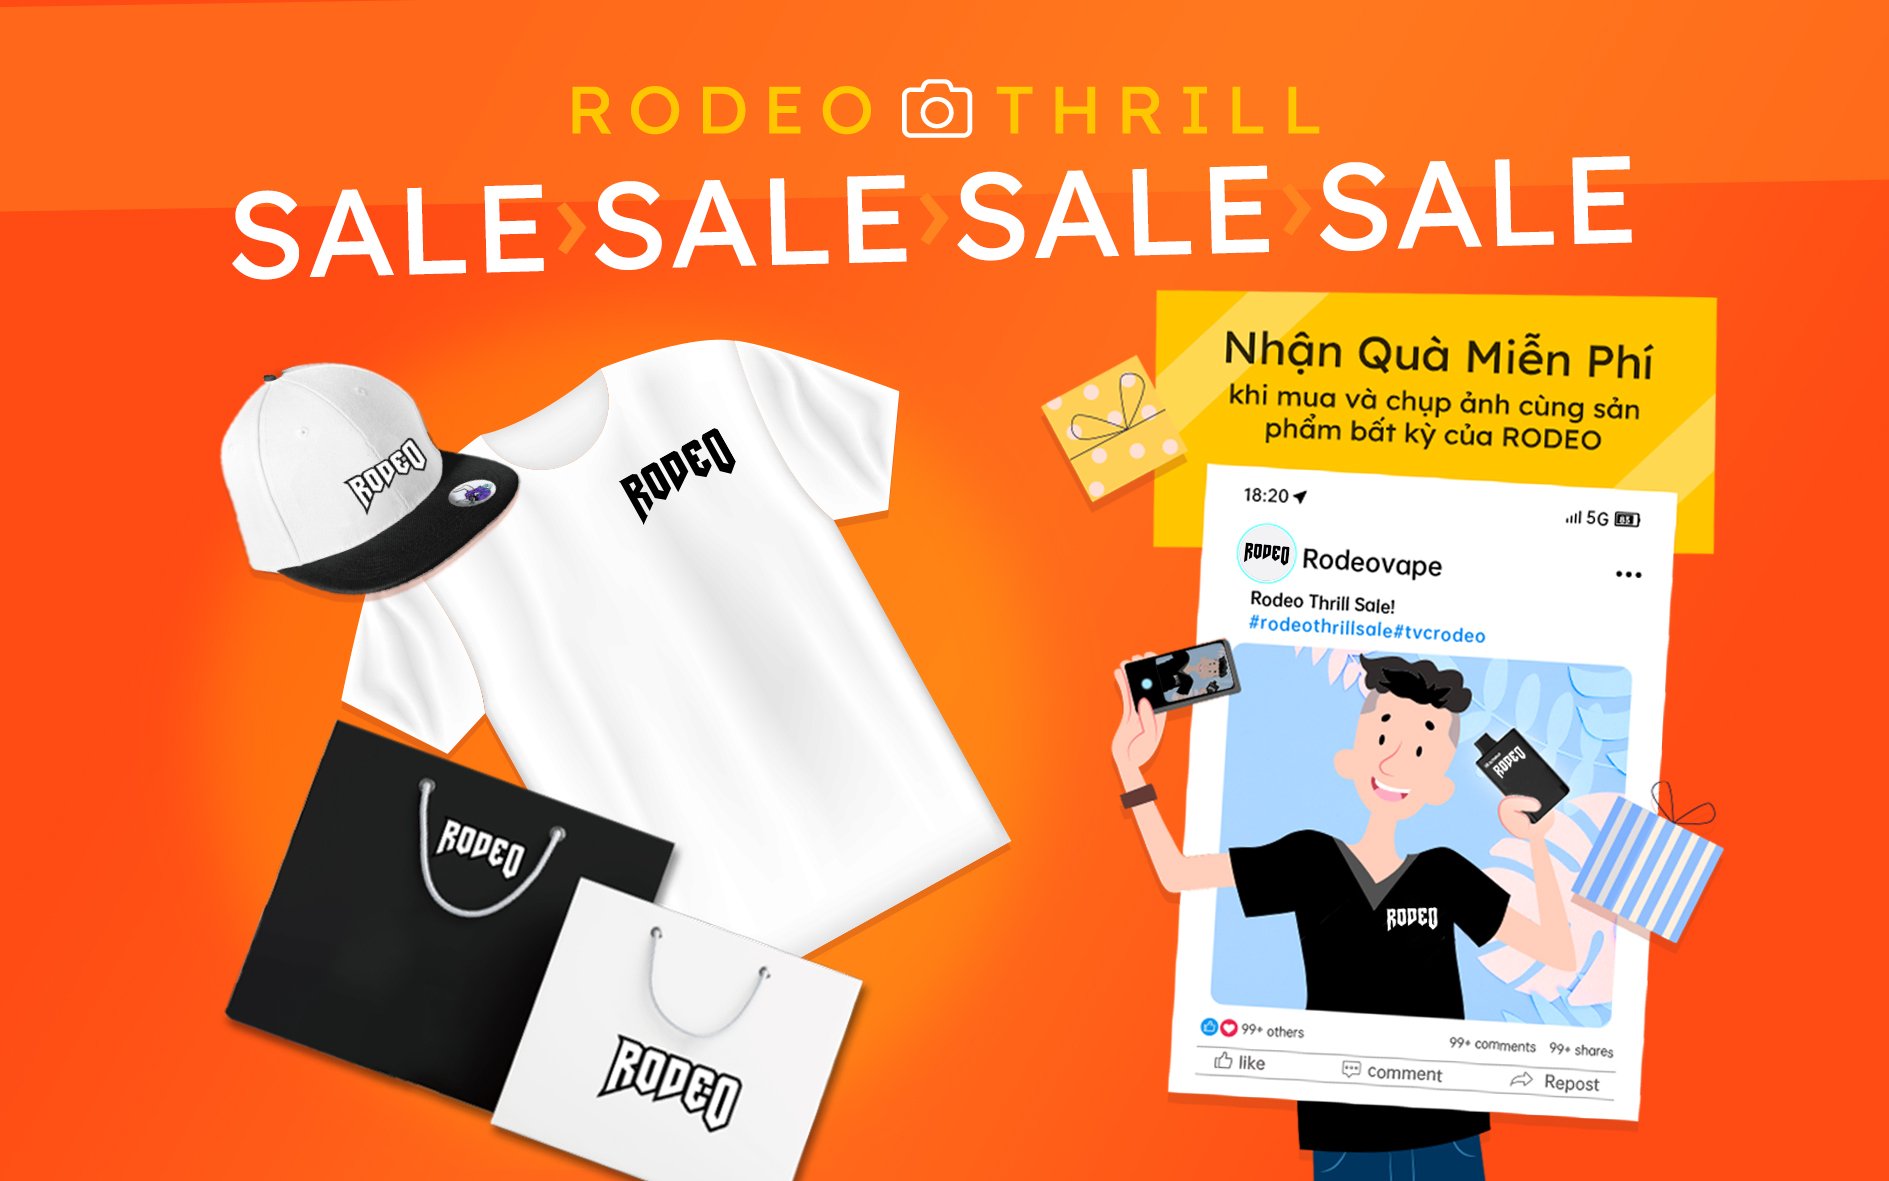 Thrill Sale Rodeo: Nhận quà đi, ngại ngần chi!